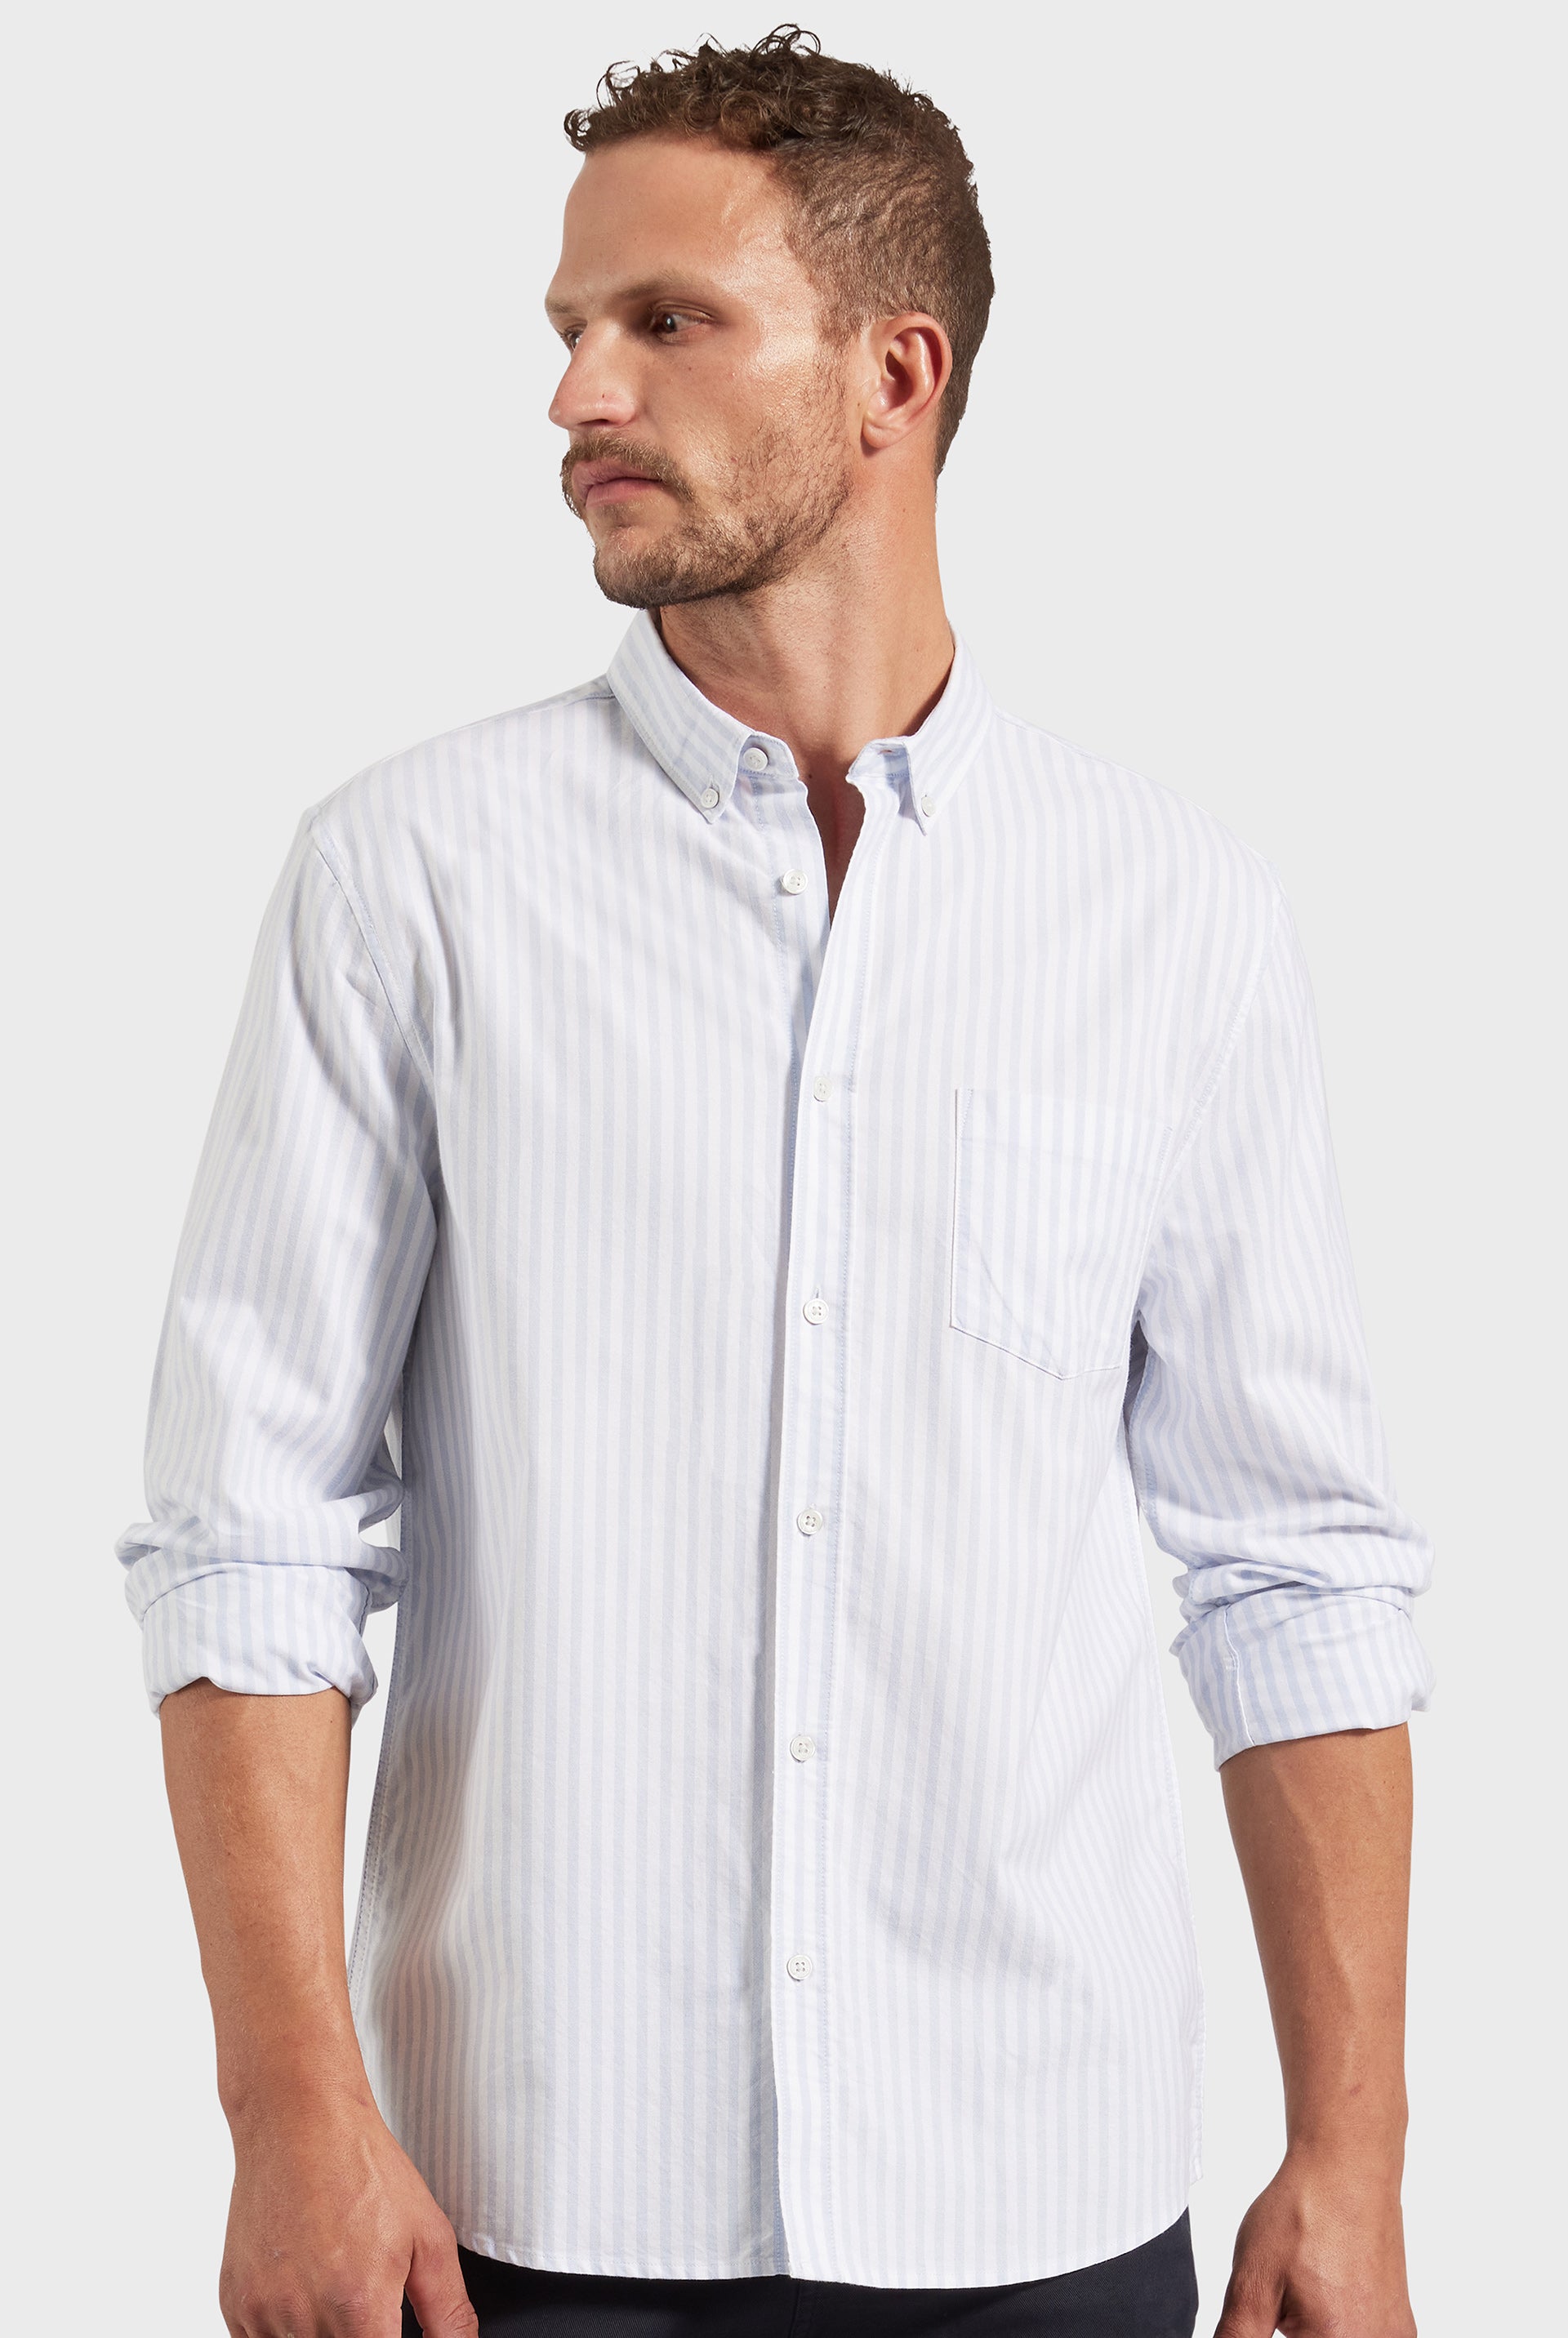 Men's Linen Shirts | Buy Linen Shirts | Academy Brand